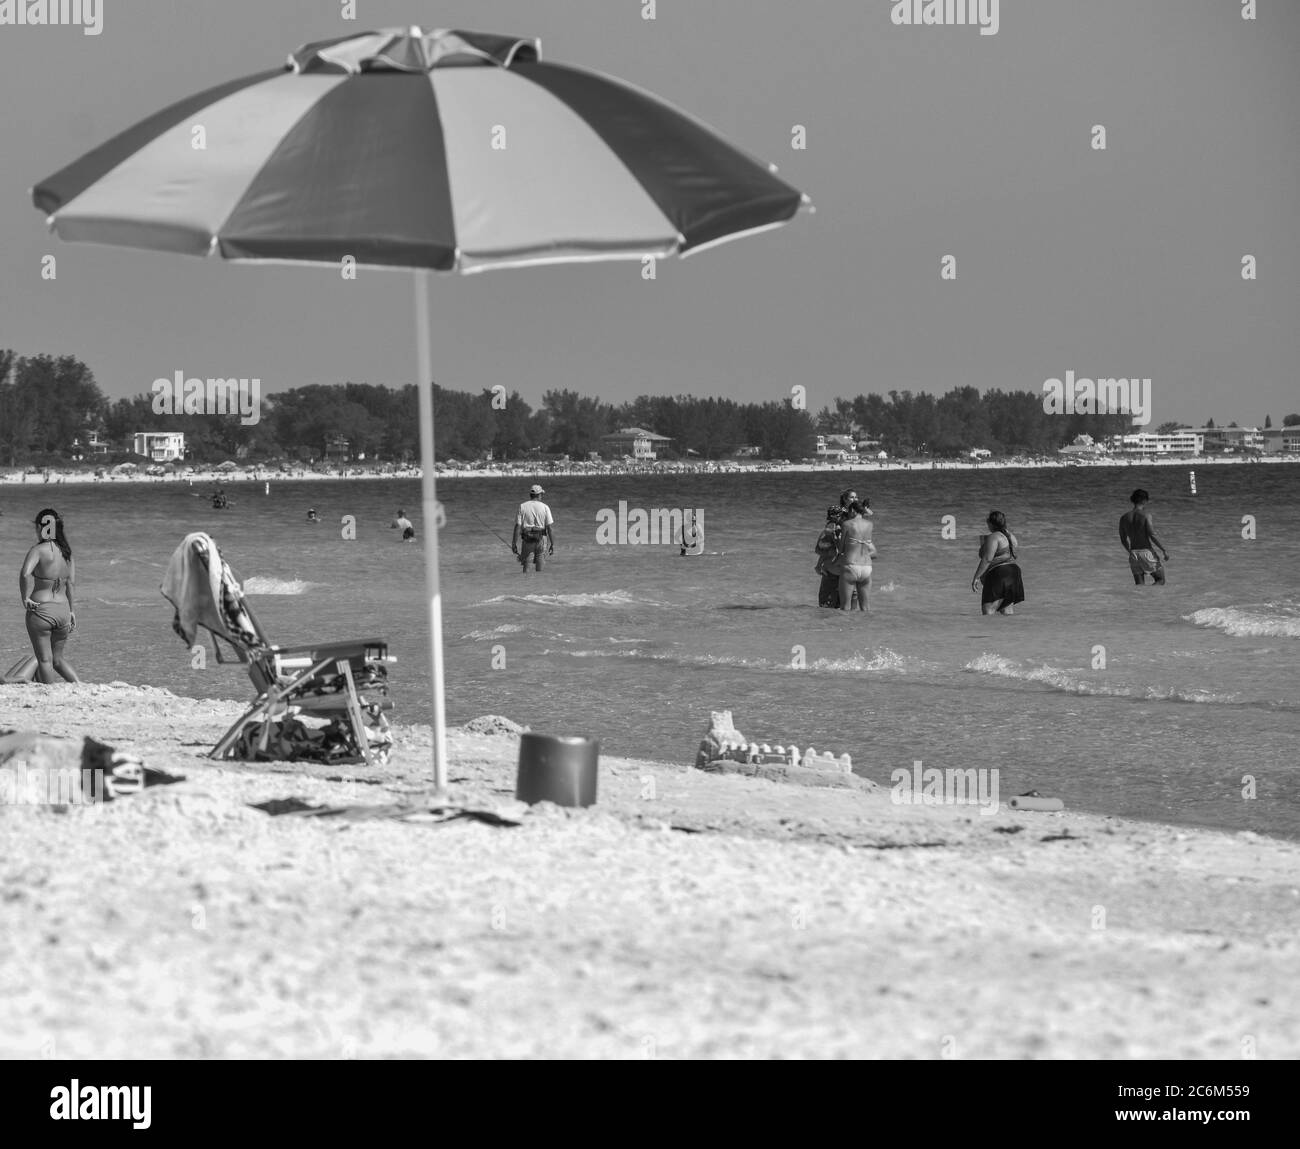 Ein Regenschirm am Strand des Golfs von Mexiko in Florida in schwarz und weiß Stockfoto